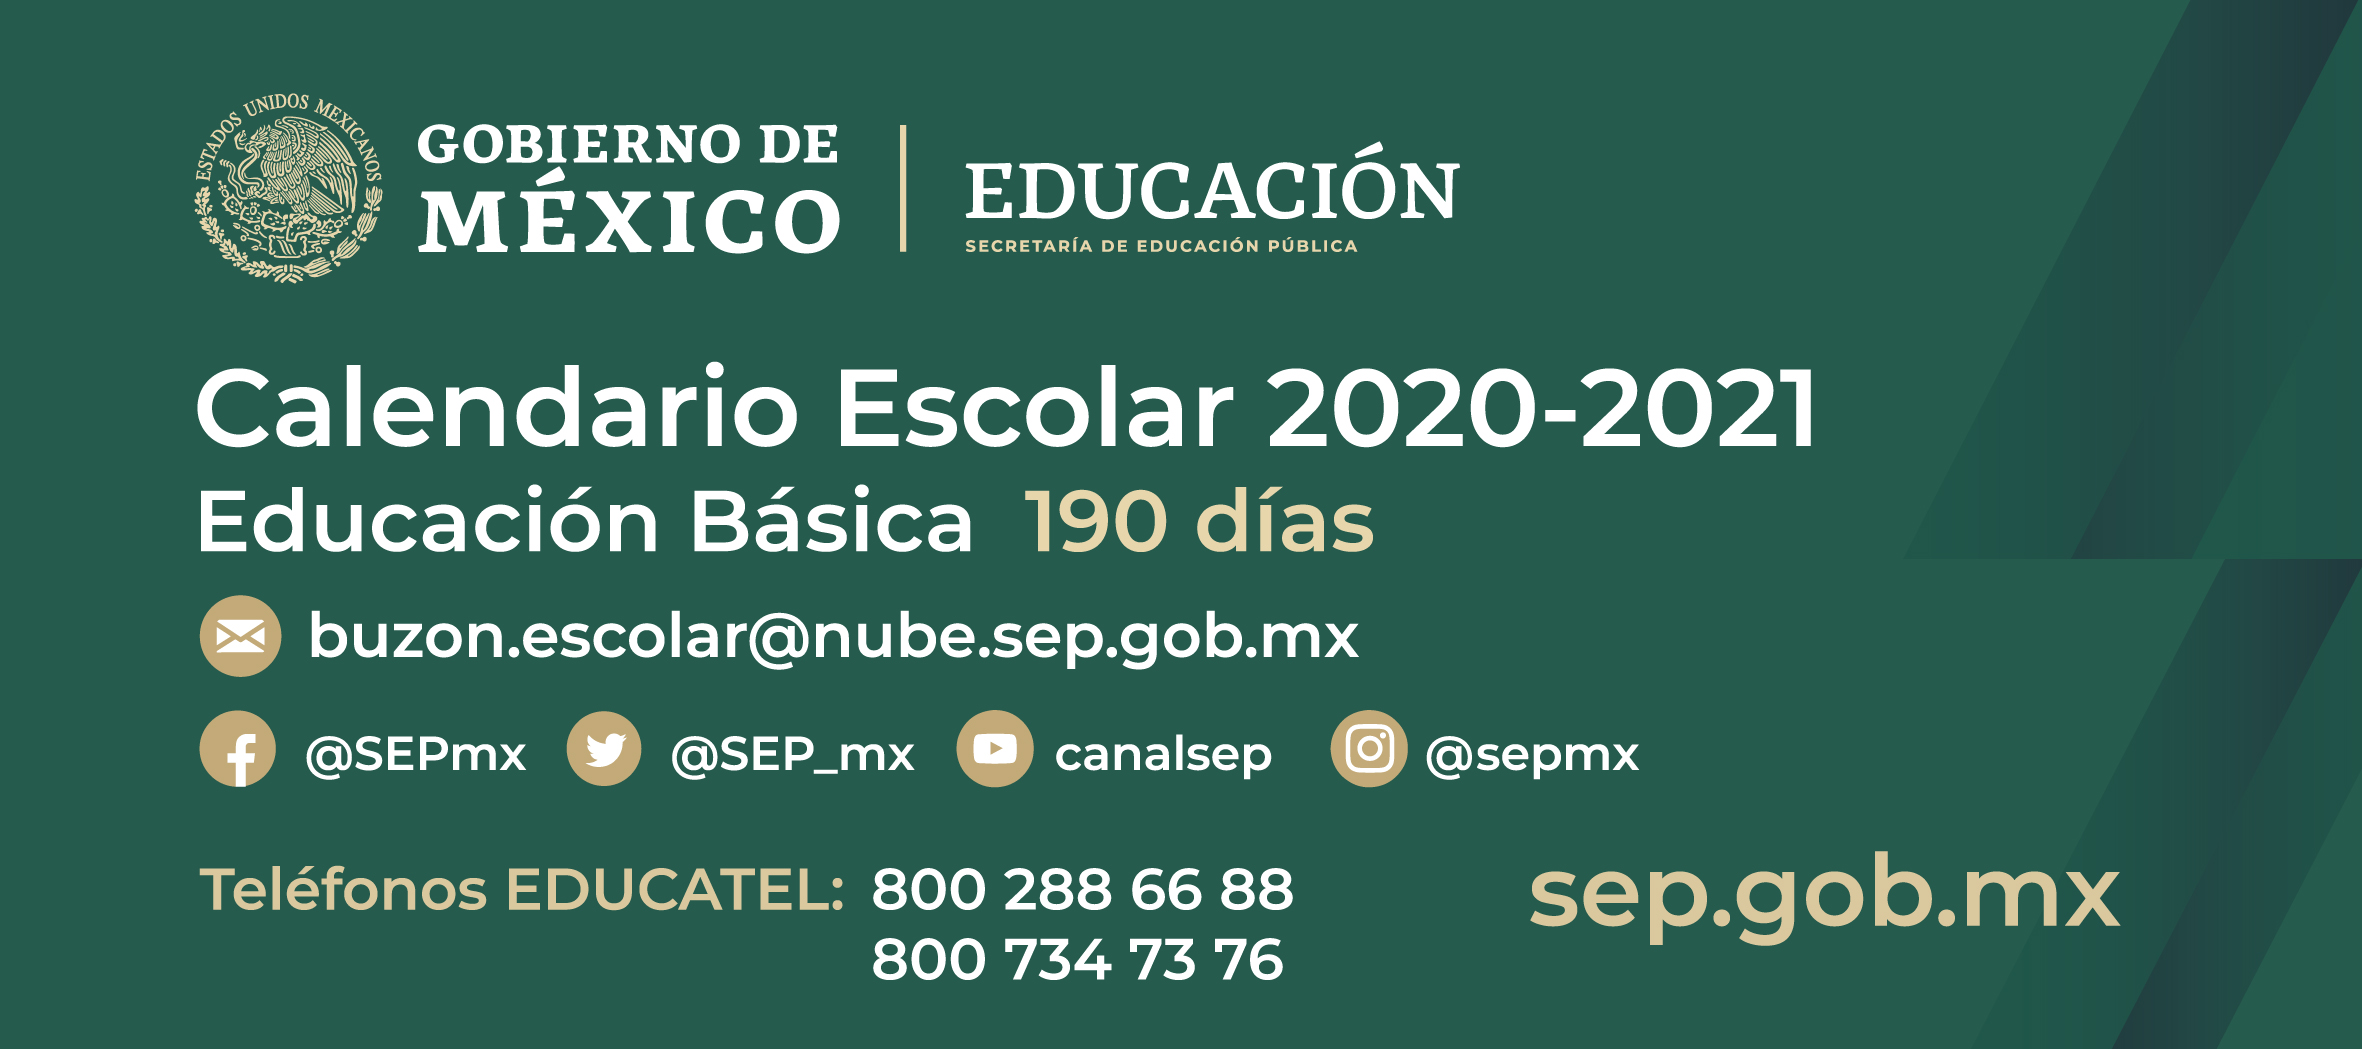 Calendario Escolar BASICA 20-21 banner.jpg